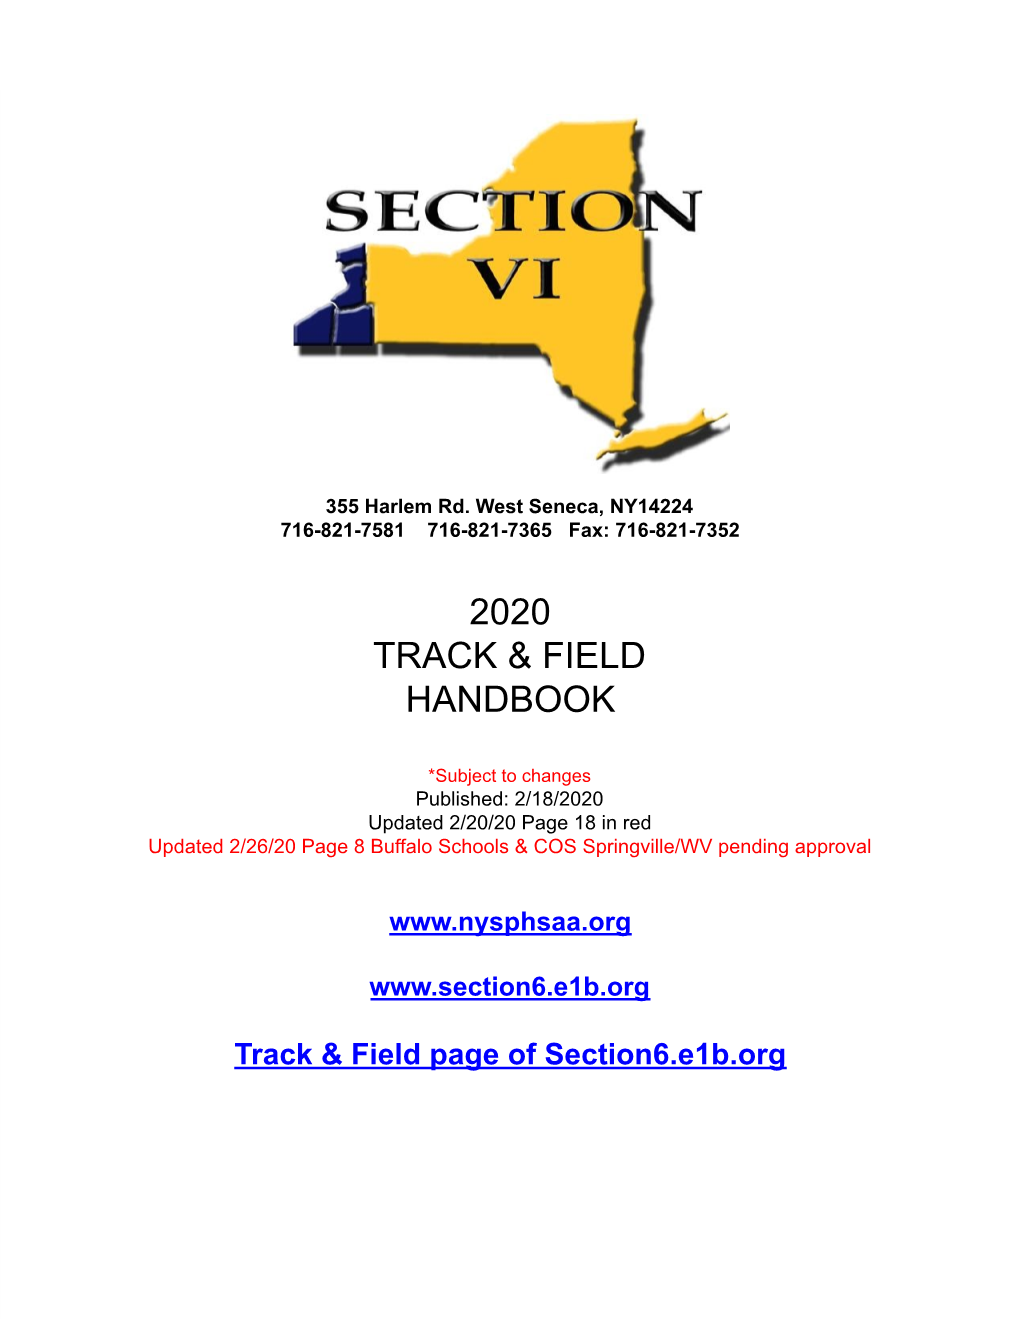 2020 Track & Field Handbook